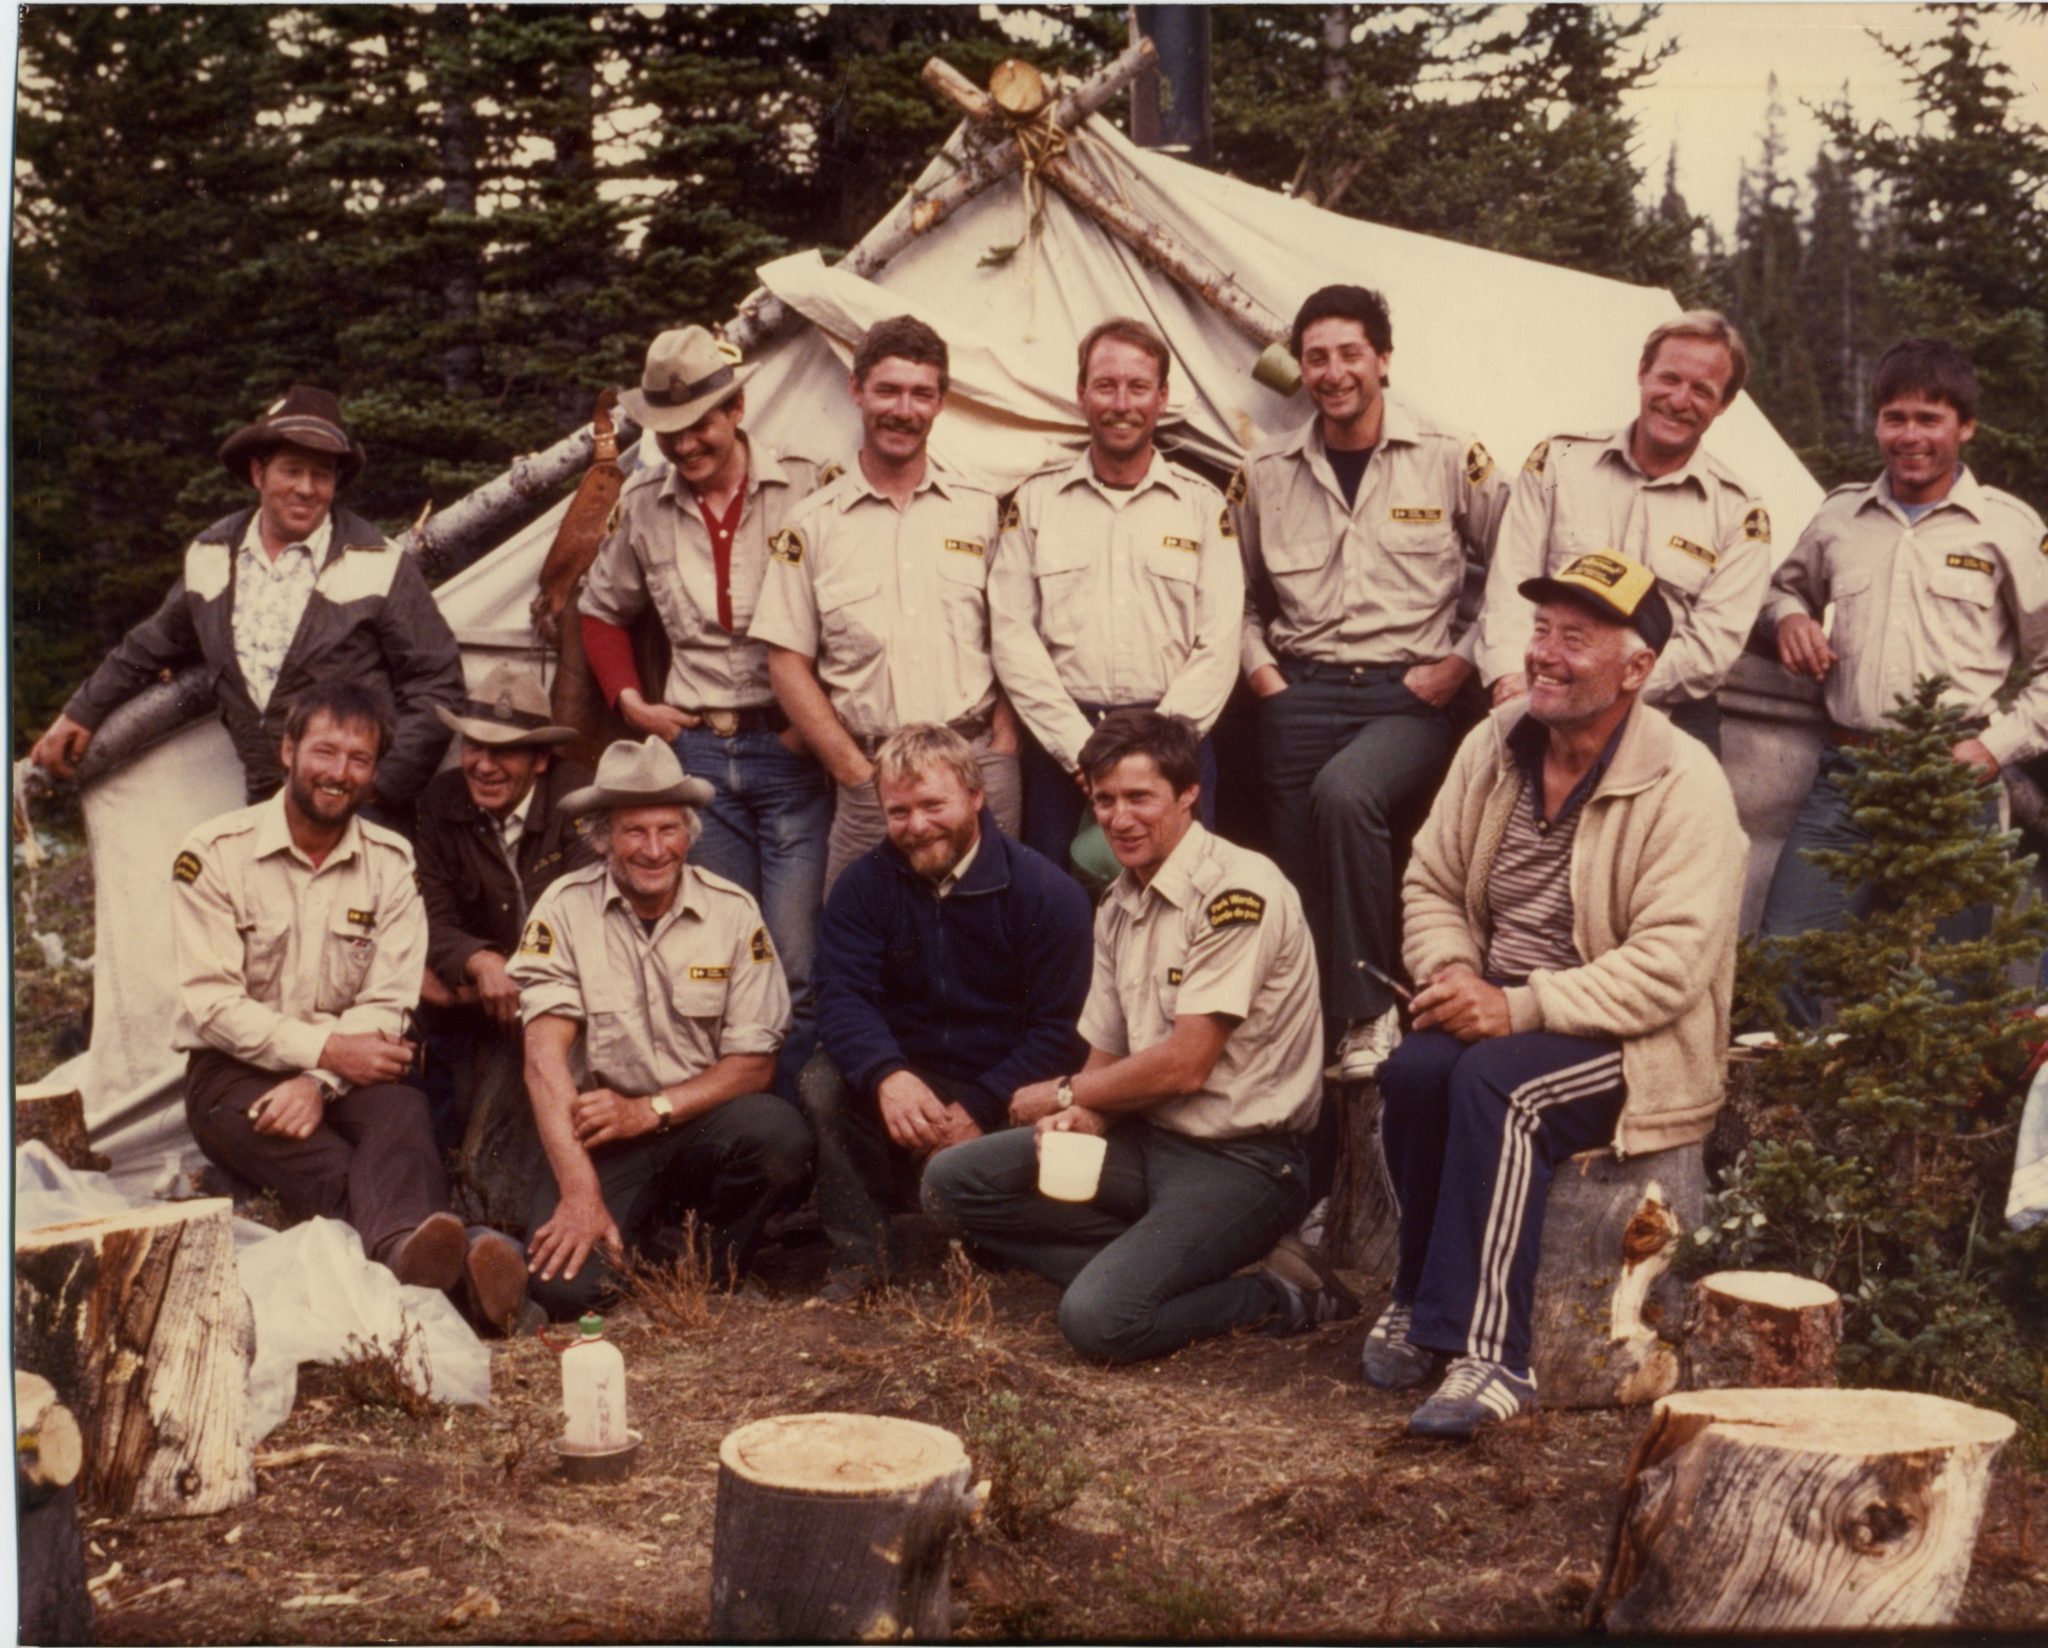 1985 Centennial Climb